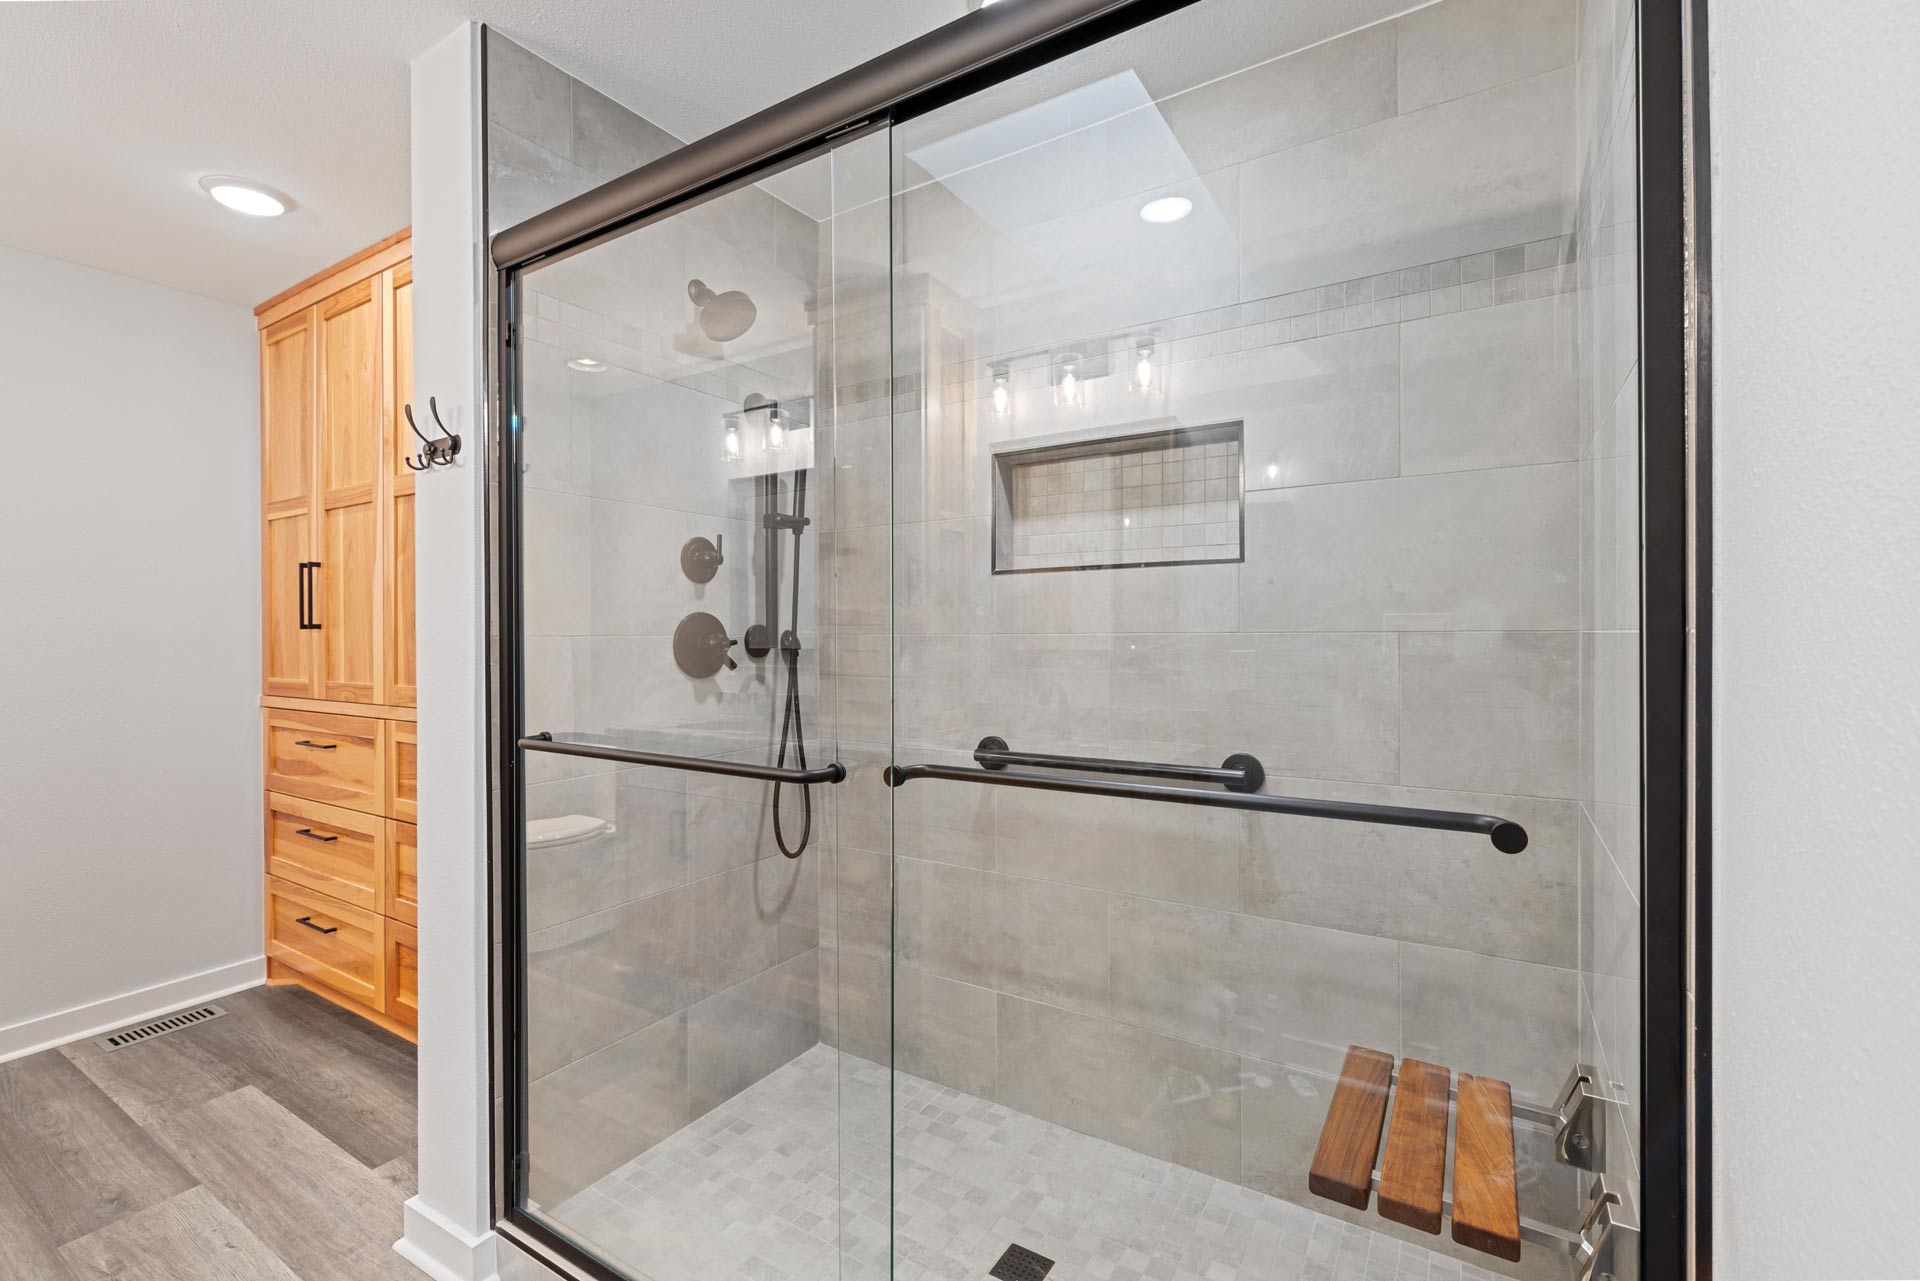 Home Remodel for Master Bath Shower